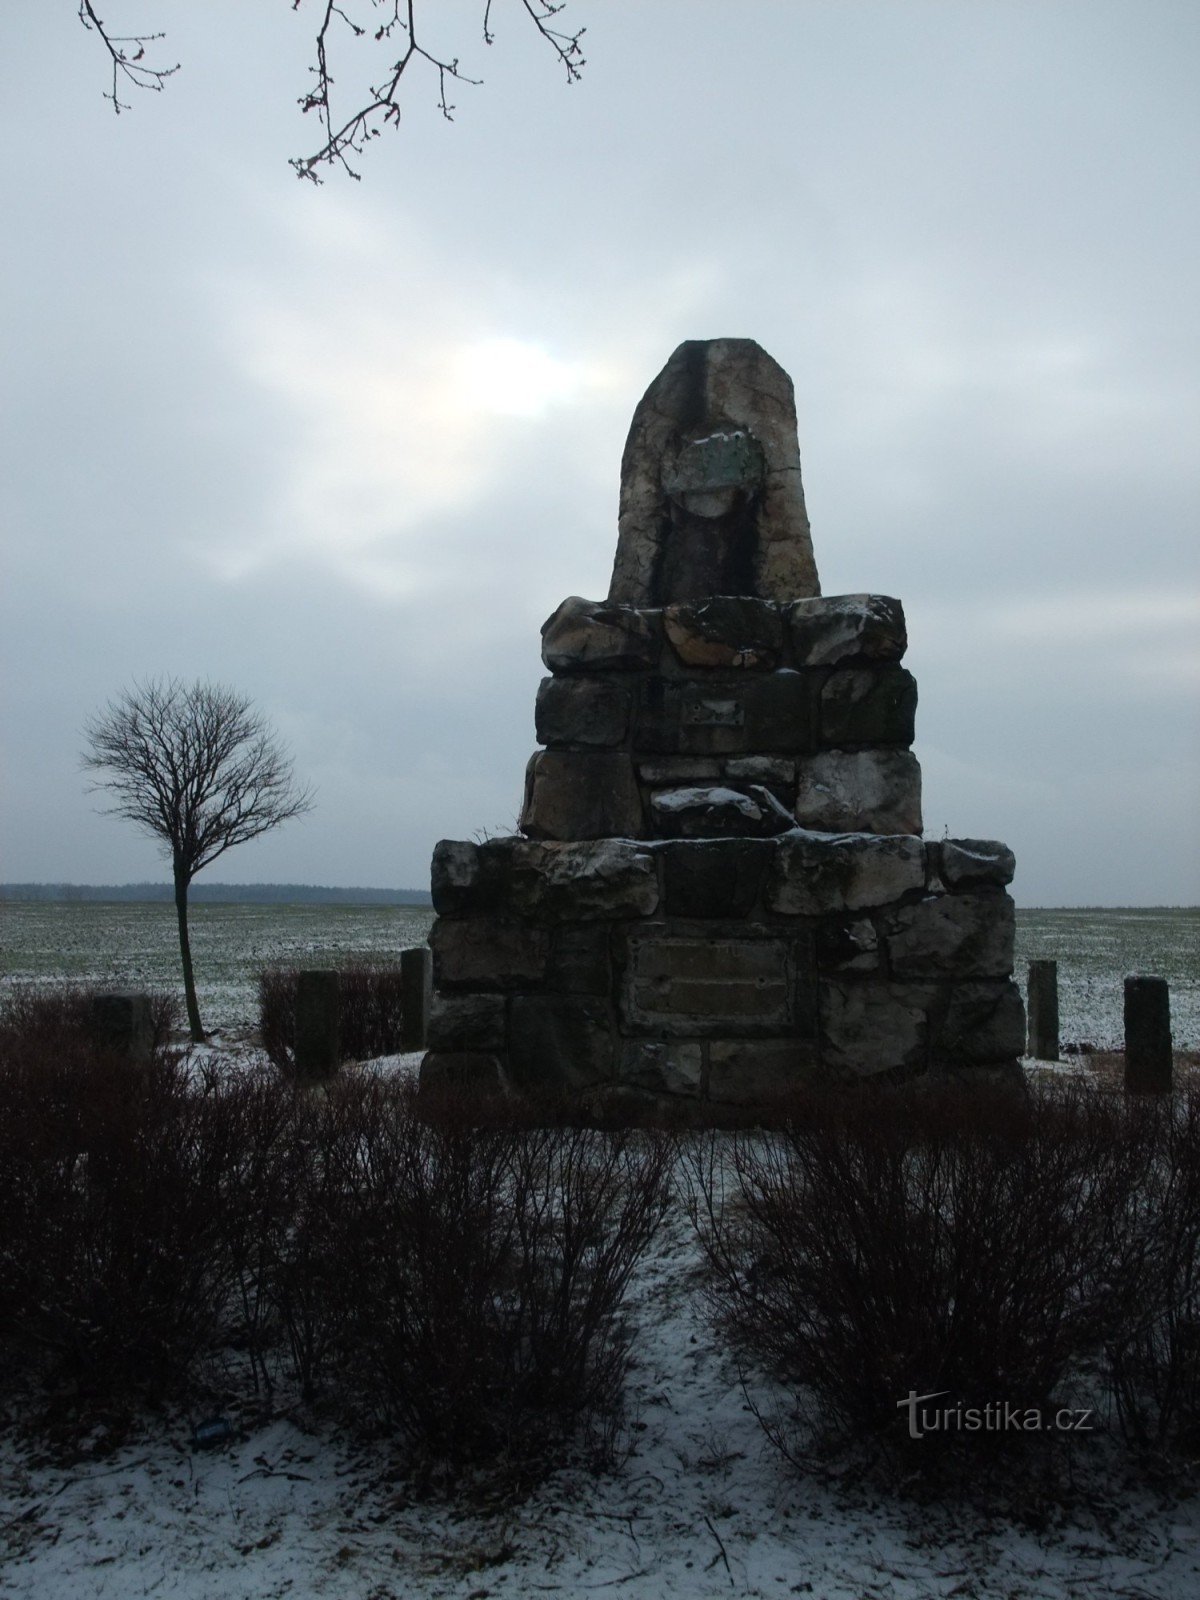 Het monument voor de ontmoeting van de drie vorsten in de buurt van het dorp Vraný